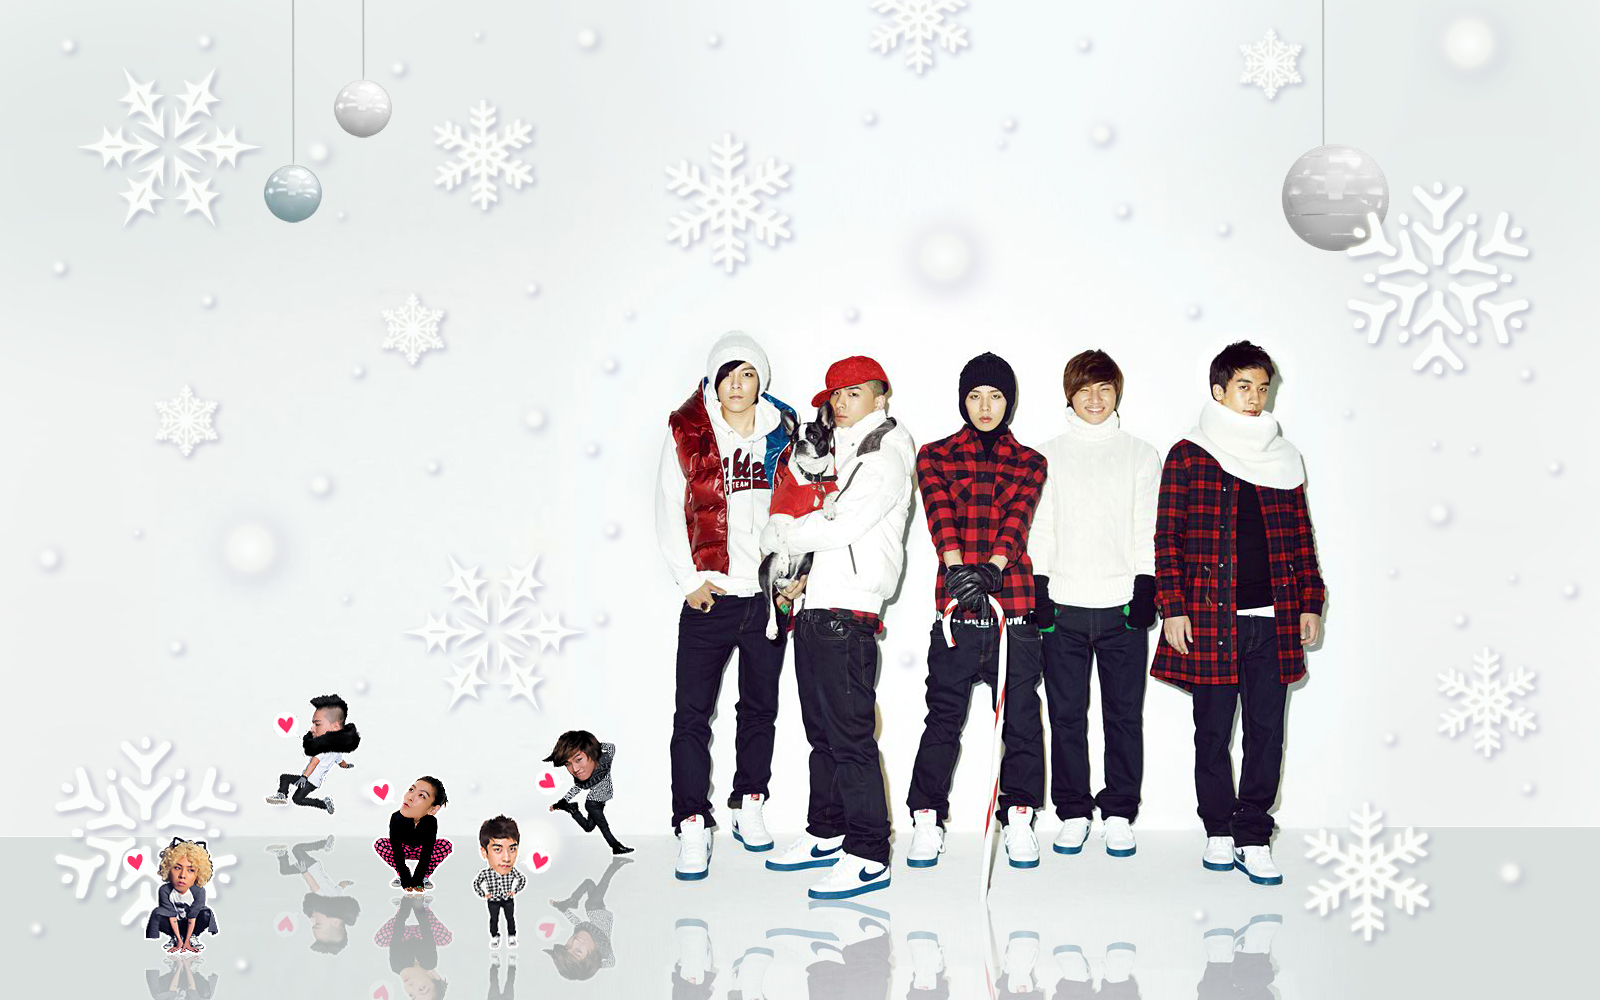  wallpaper^^ Merry Christmas VIPs Merry Christmas Big Bang